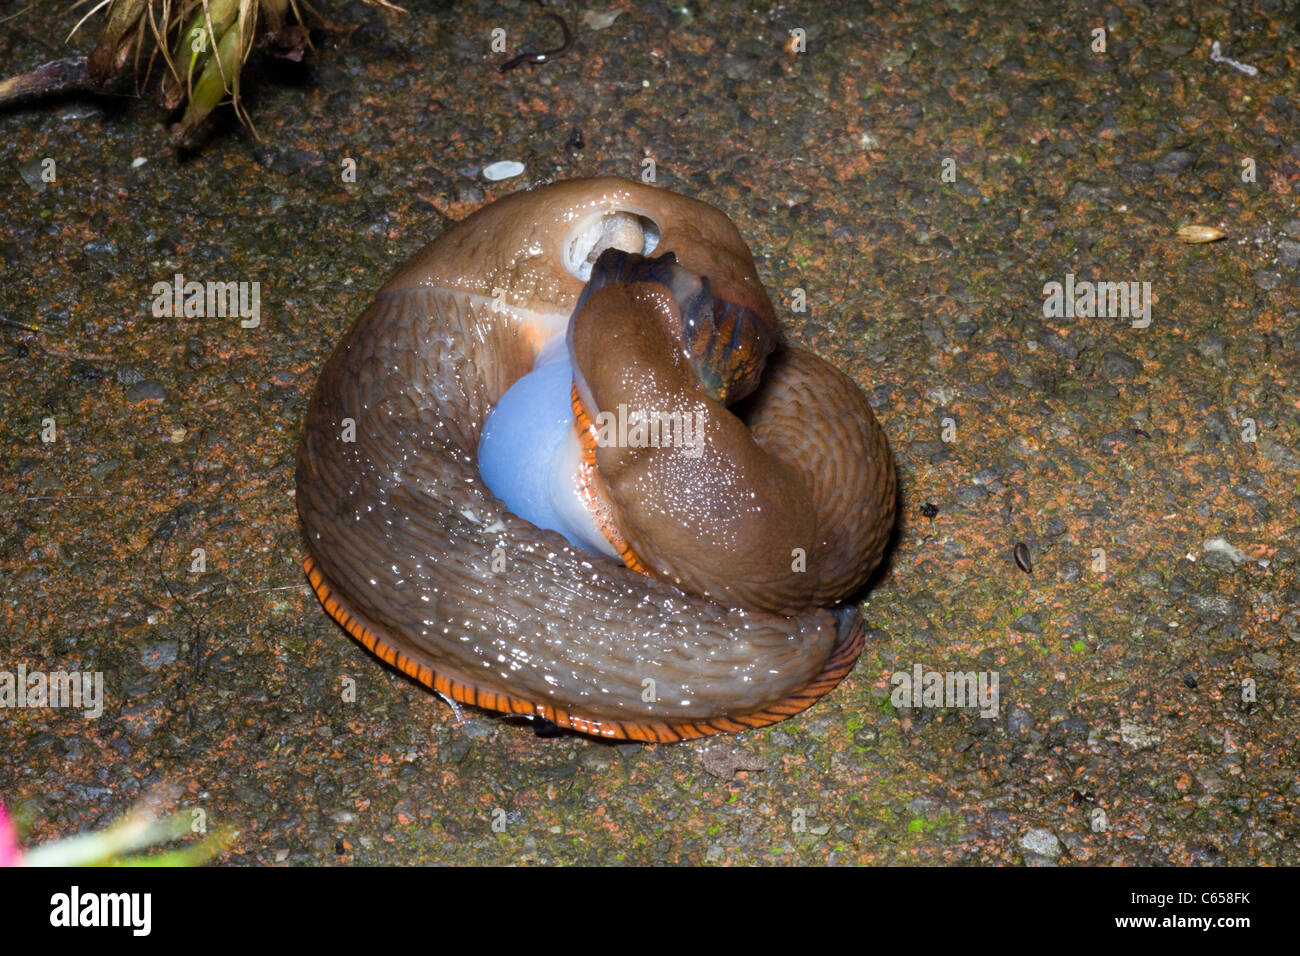 gastropod mollusc,  slugs mating. Stock Photo